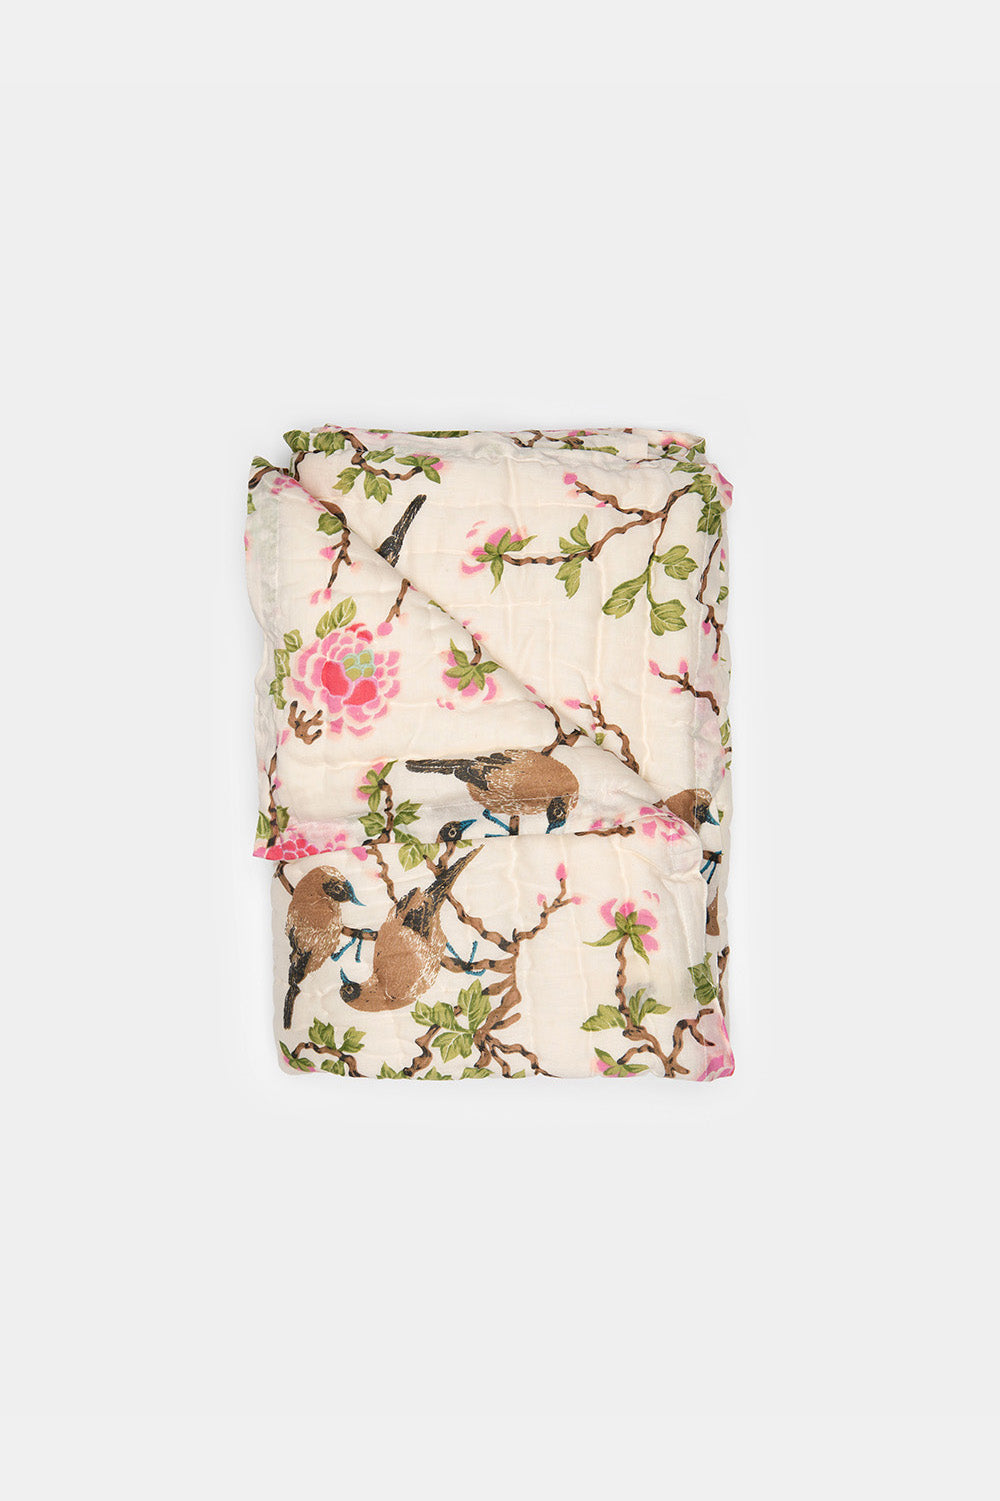 Cotton Hand-stitched Travel Quilt in Lovebird